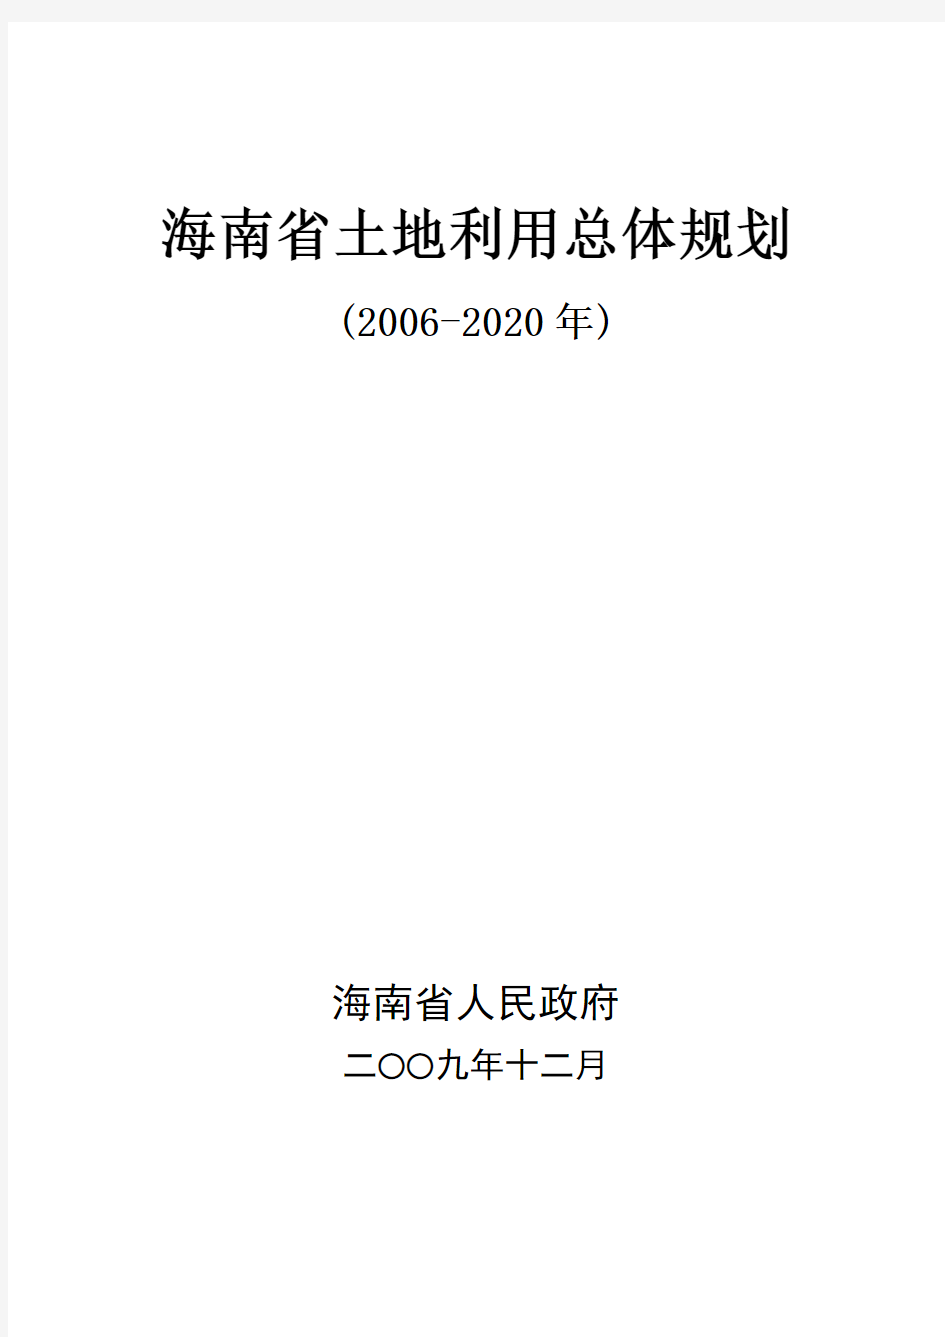 海南省土地利用总体规划(2006-2020)